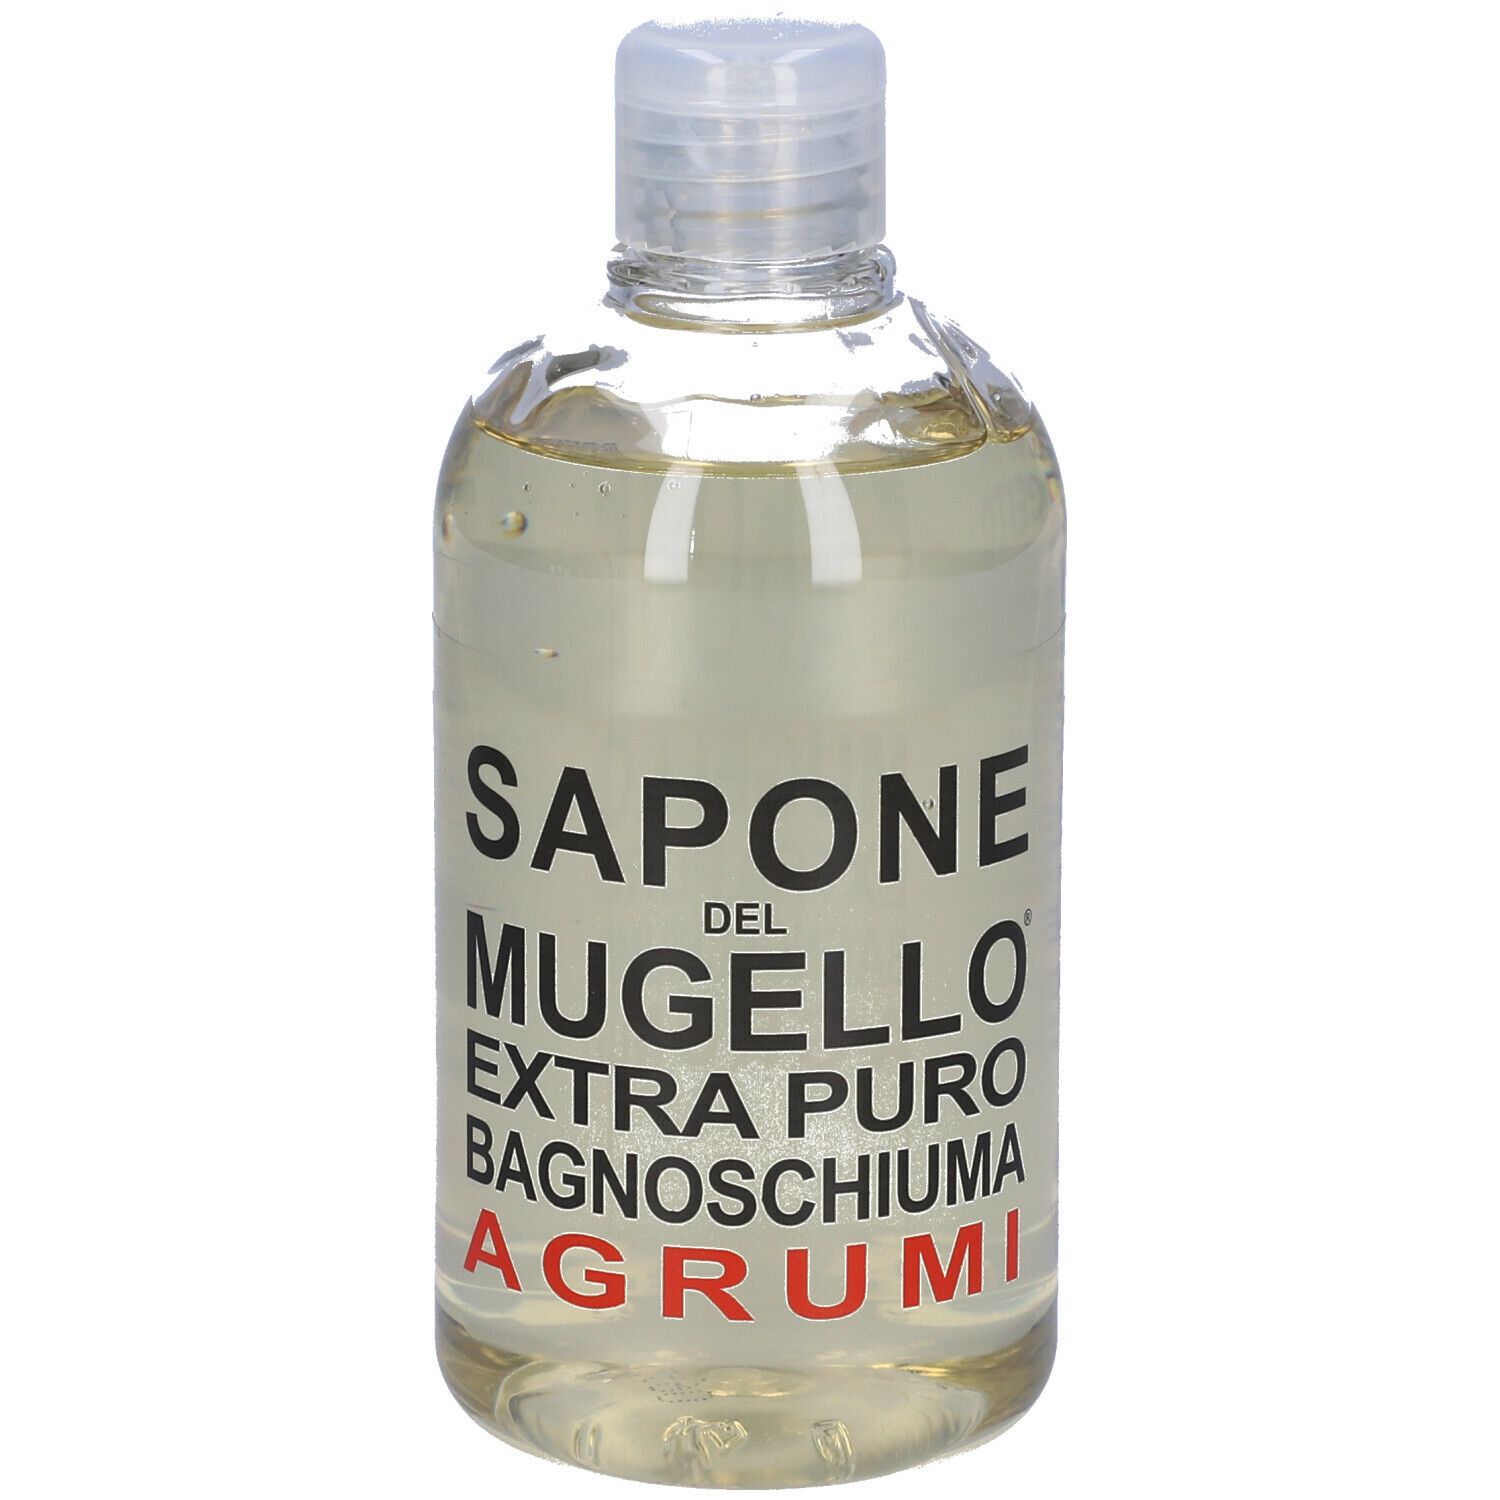 Sapone Del Mugello Extra Puro Bagnoschiuma Agrumi